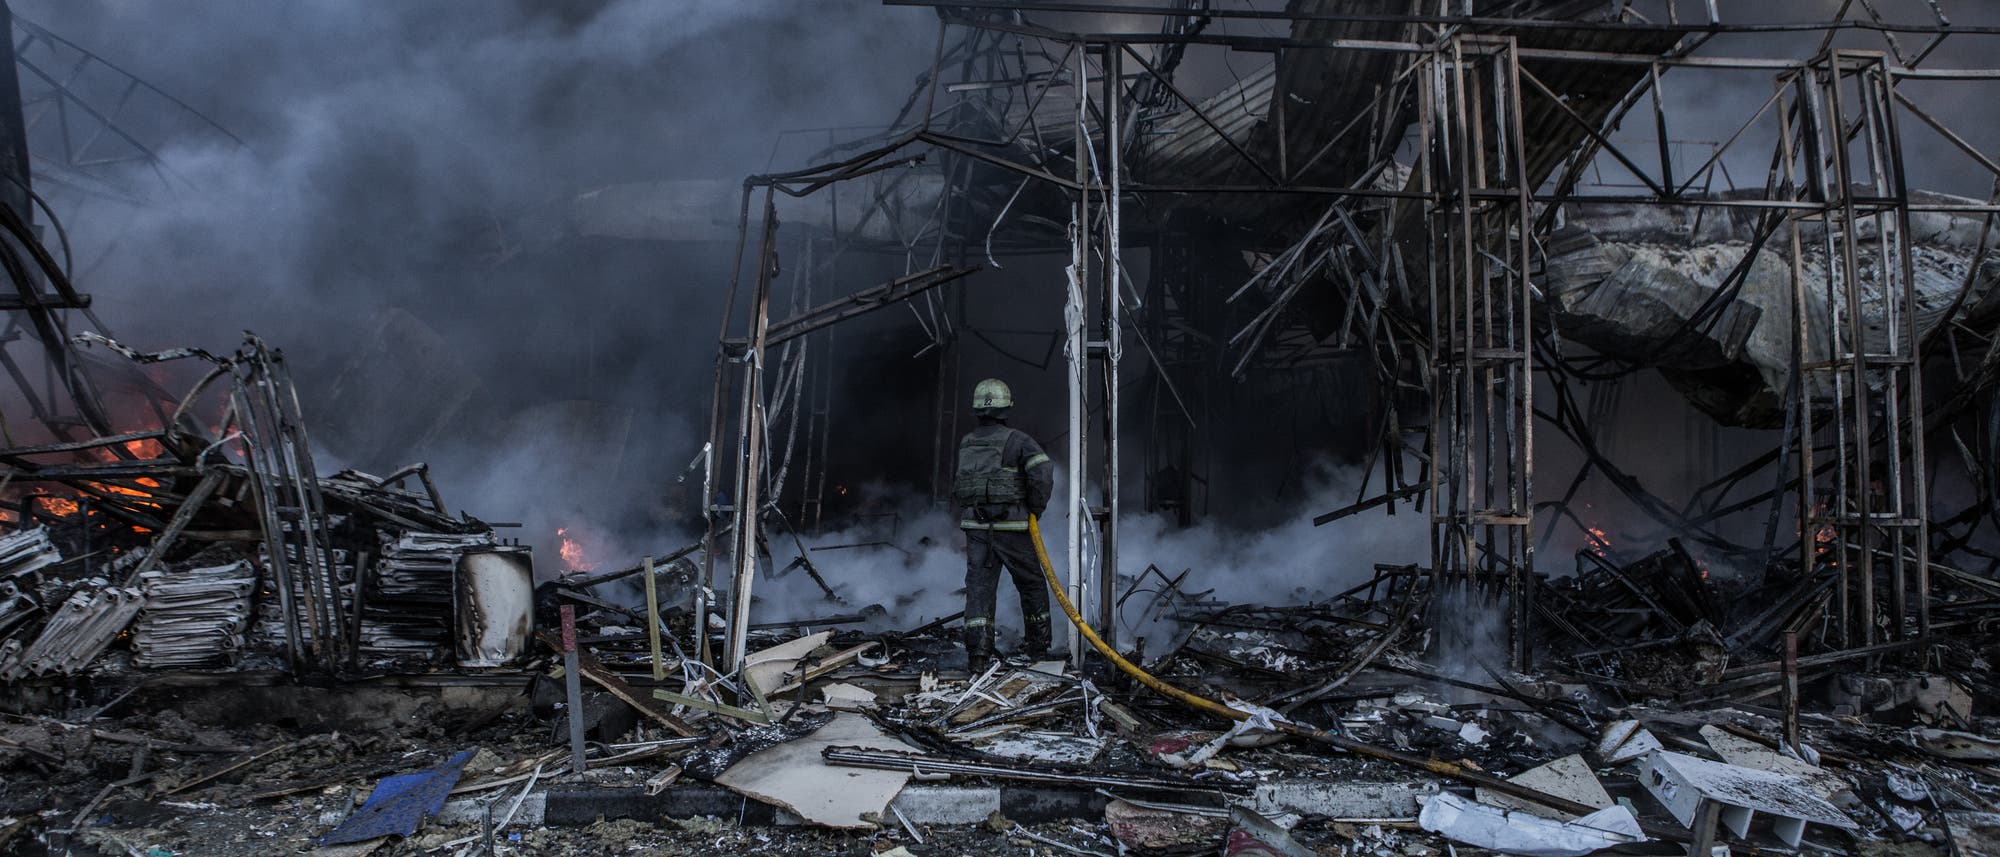 Ein Feuerwehrmann versucht, ein zerbombtes Gebäude in Charkiw zu löschen. Aufnahme vom 16. März 2022.